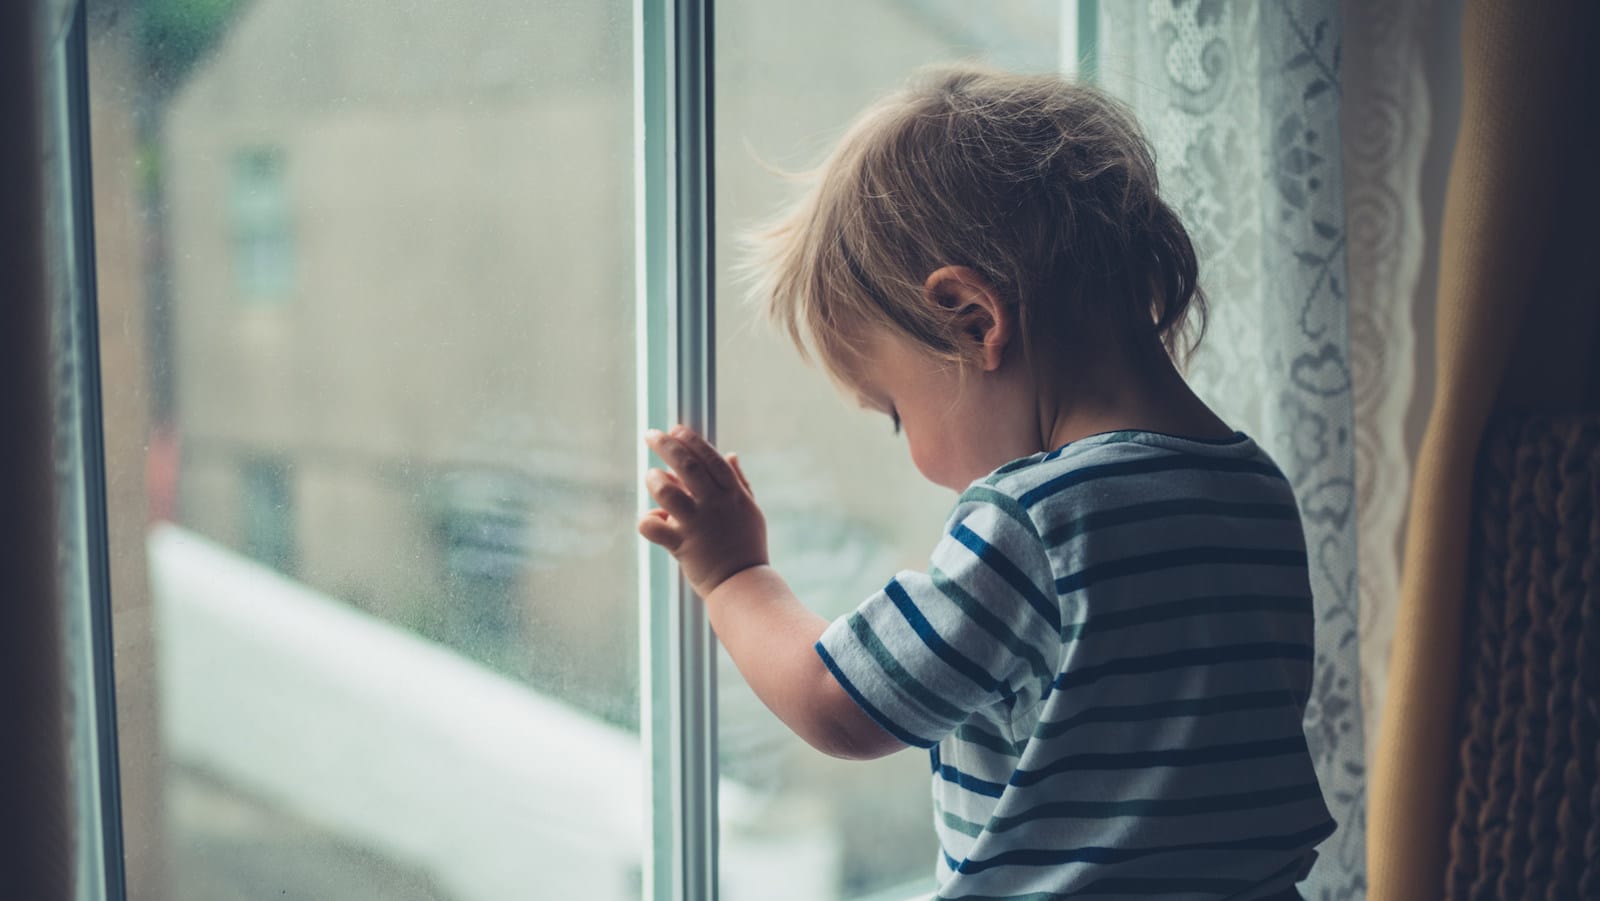 Bambini istituzionalizzati: i principali studi sugli esiti della deprivazione